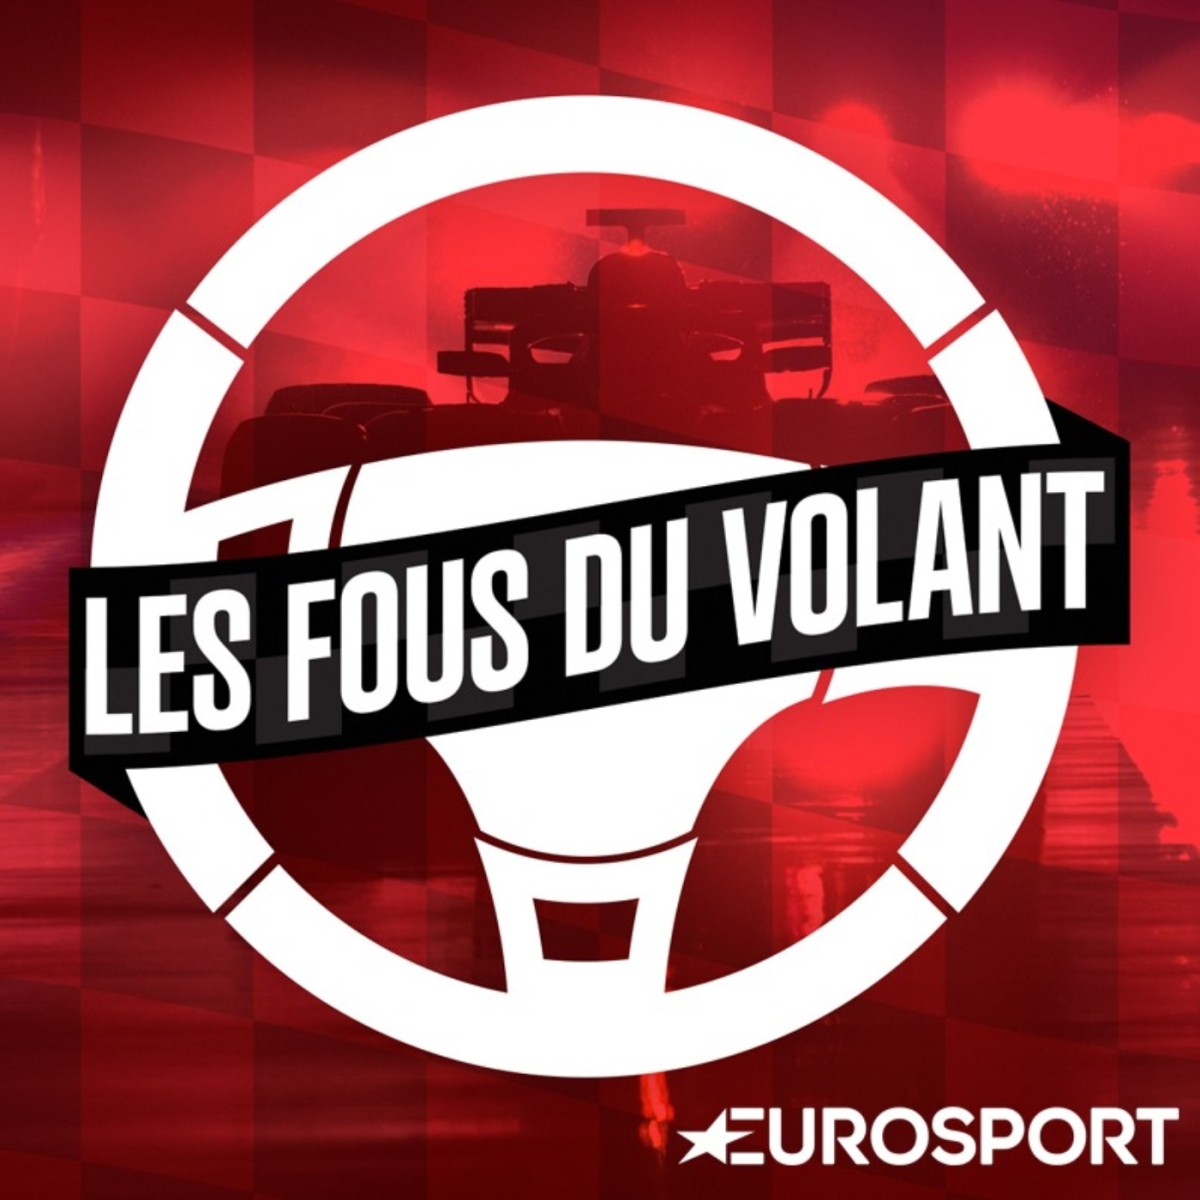 ️ Les fous du volant  Eurosport  Podcasts